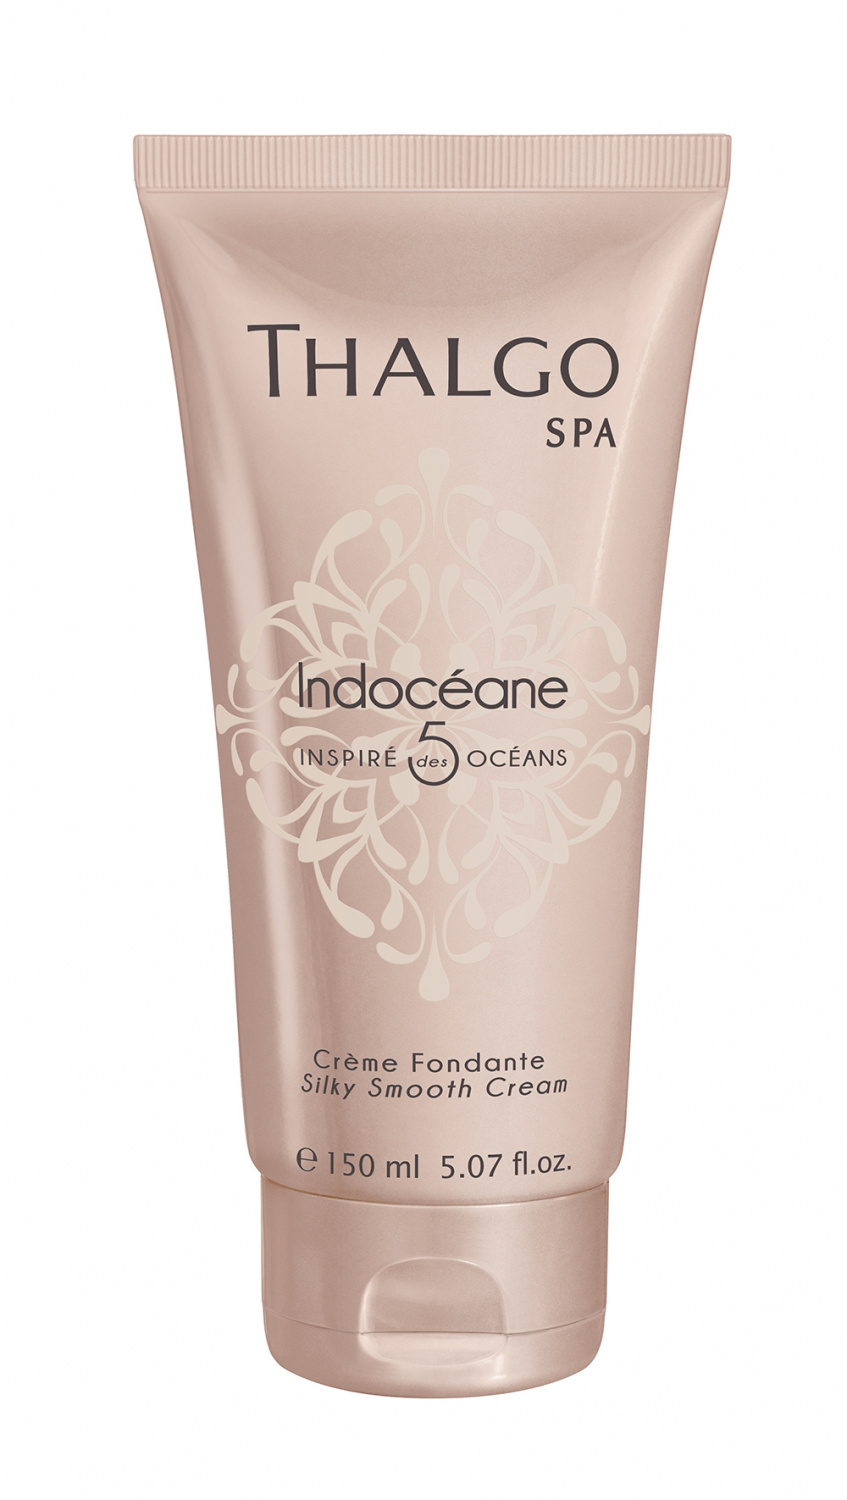 Thalgo Indoceane Silky Smooth Cream 150ml - интернет-магазин профессиональной косметики Spadream, изображение 30913